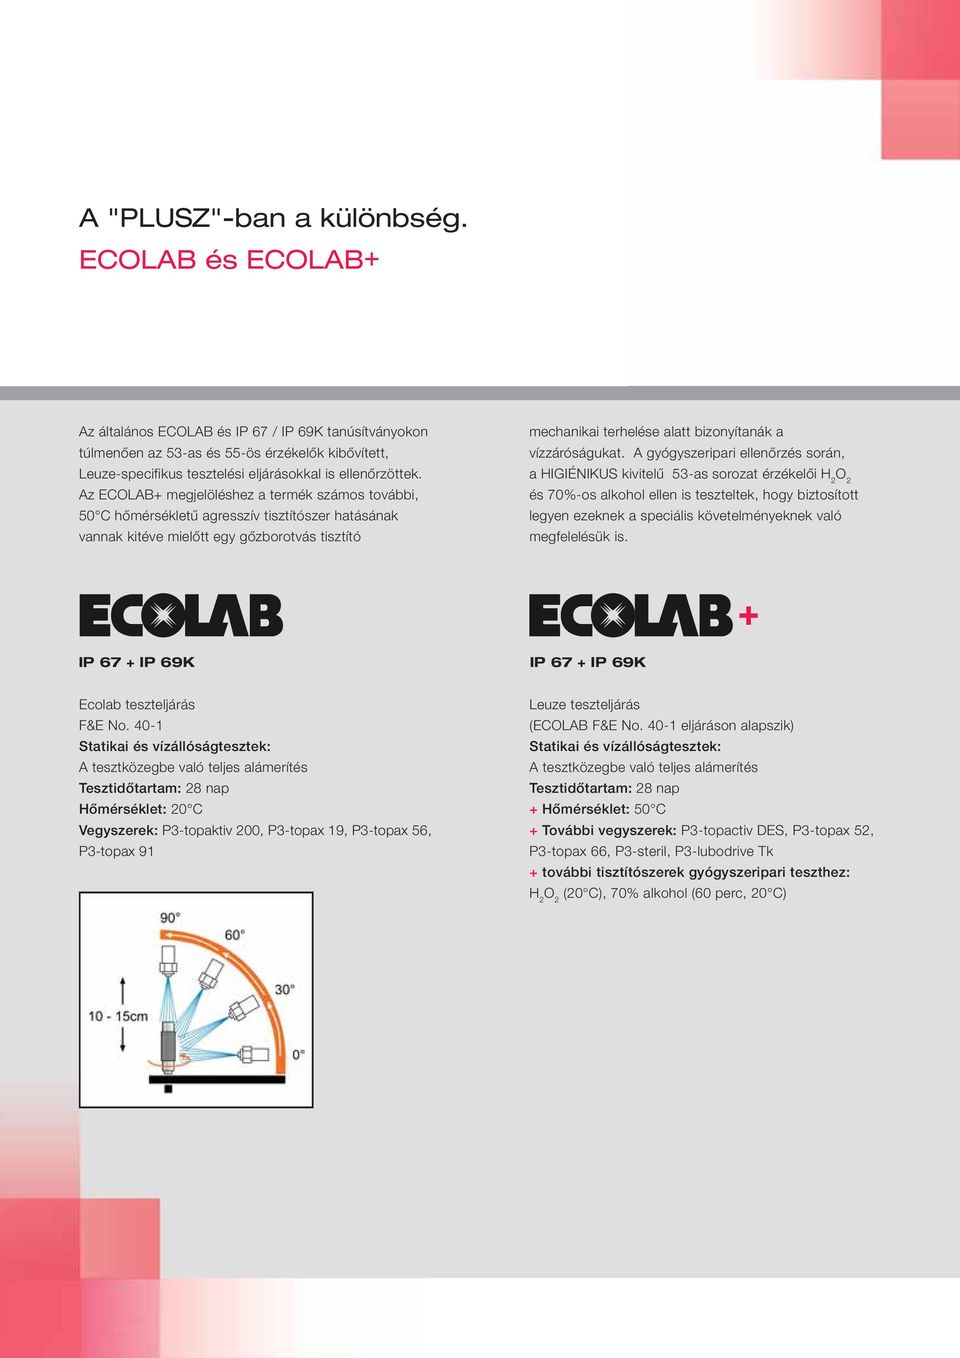 Az ECOLAB+ megjelöléshez a termék számos további, 50 C hőmérsékletű agresszív tisztítószer hatásának vannak kitéve mielőtt egy gőzborotvás tisztító mechanikai terhelése alatt bizonyítanák a